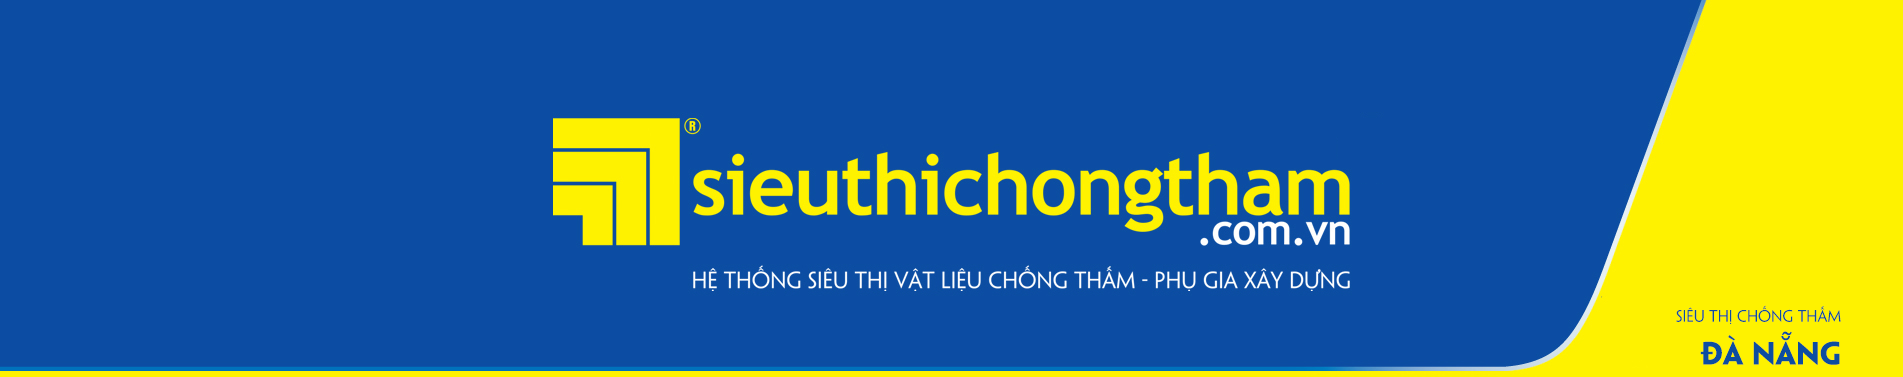 Sieu Thi Chong Tham Da Nang